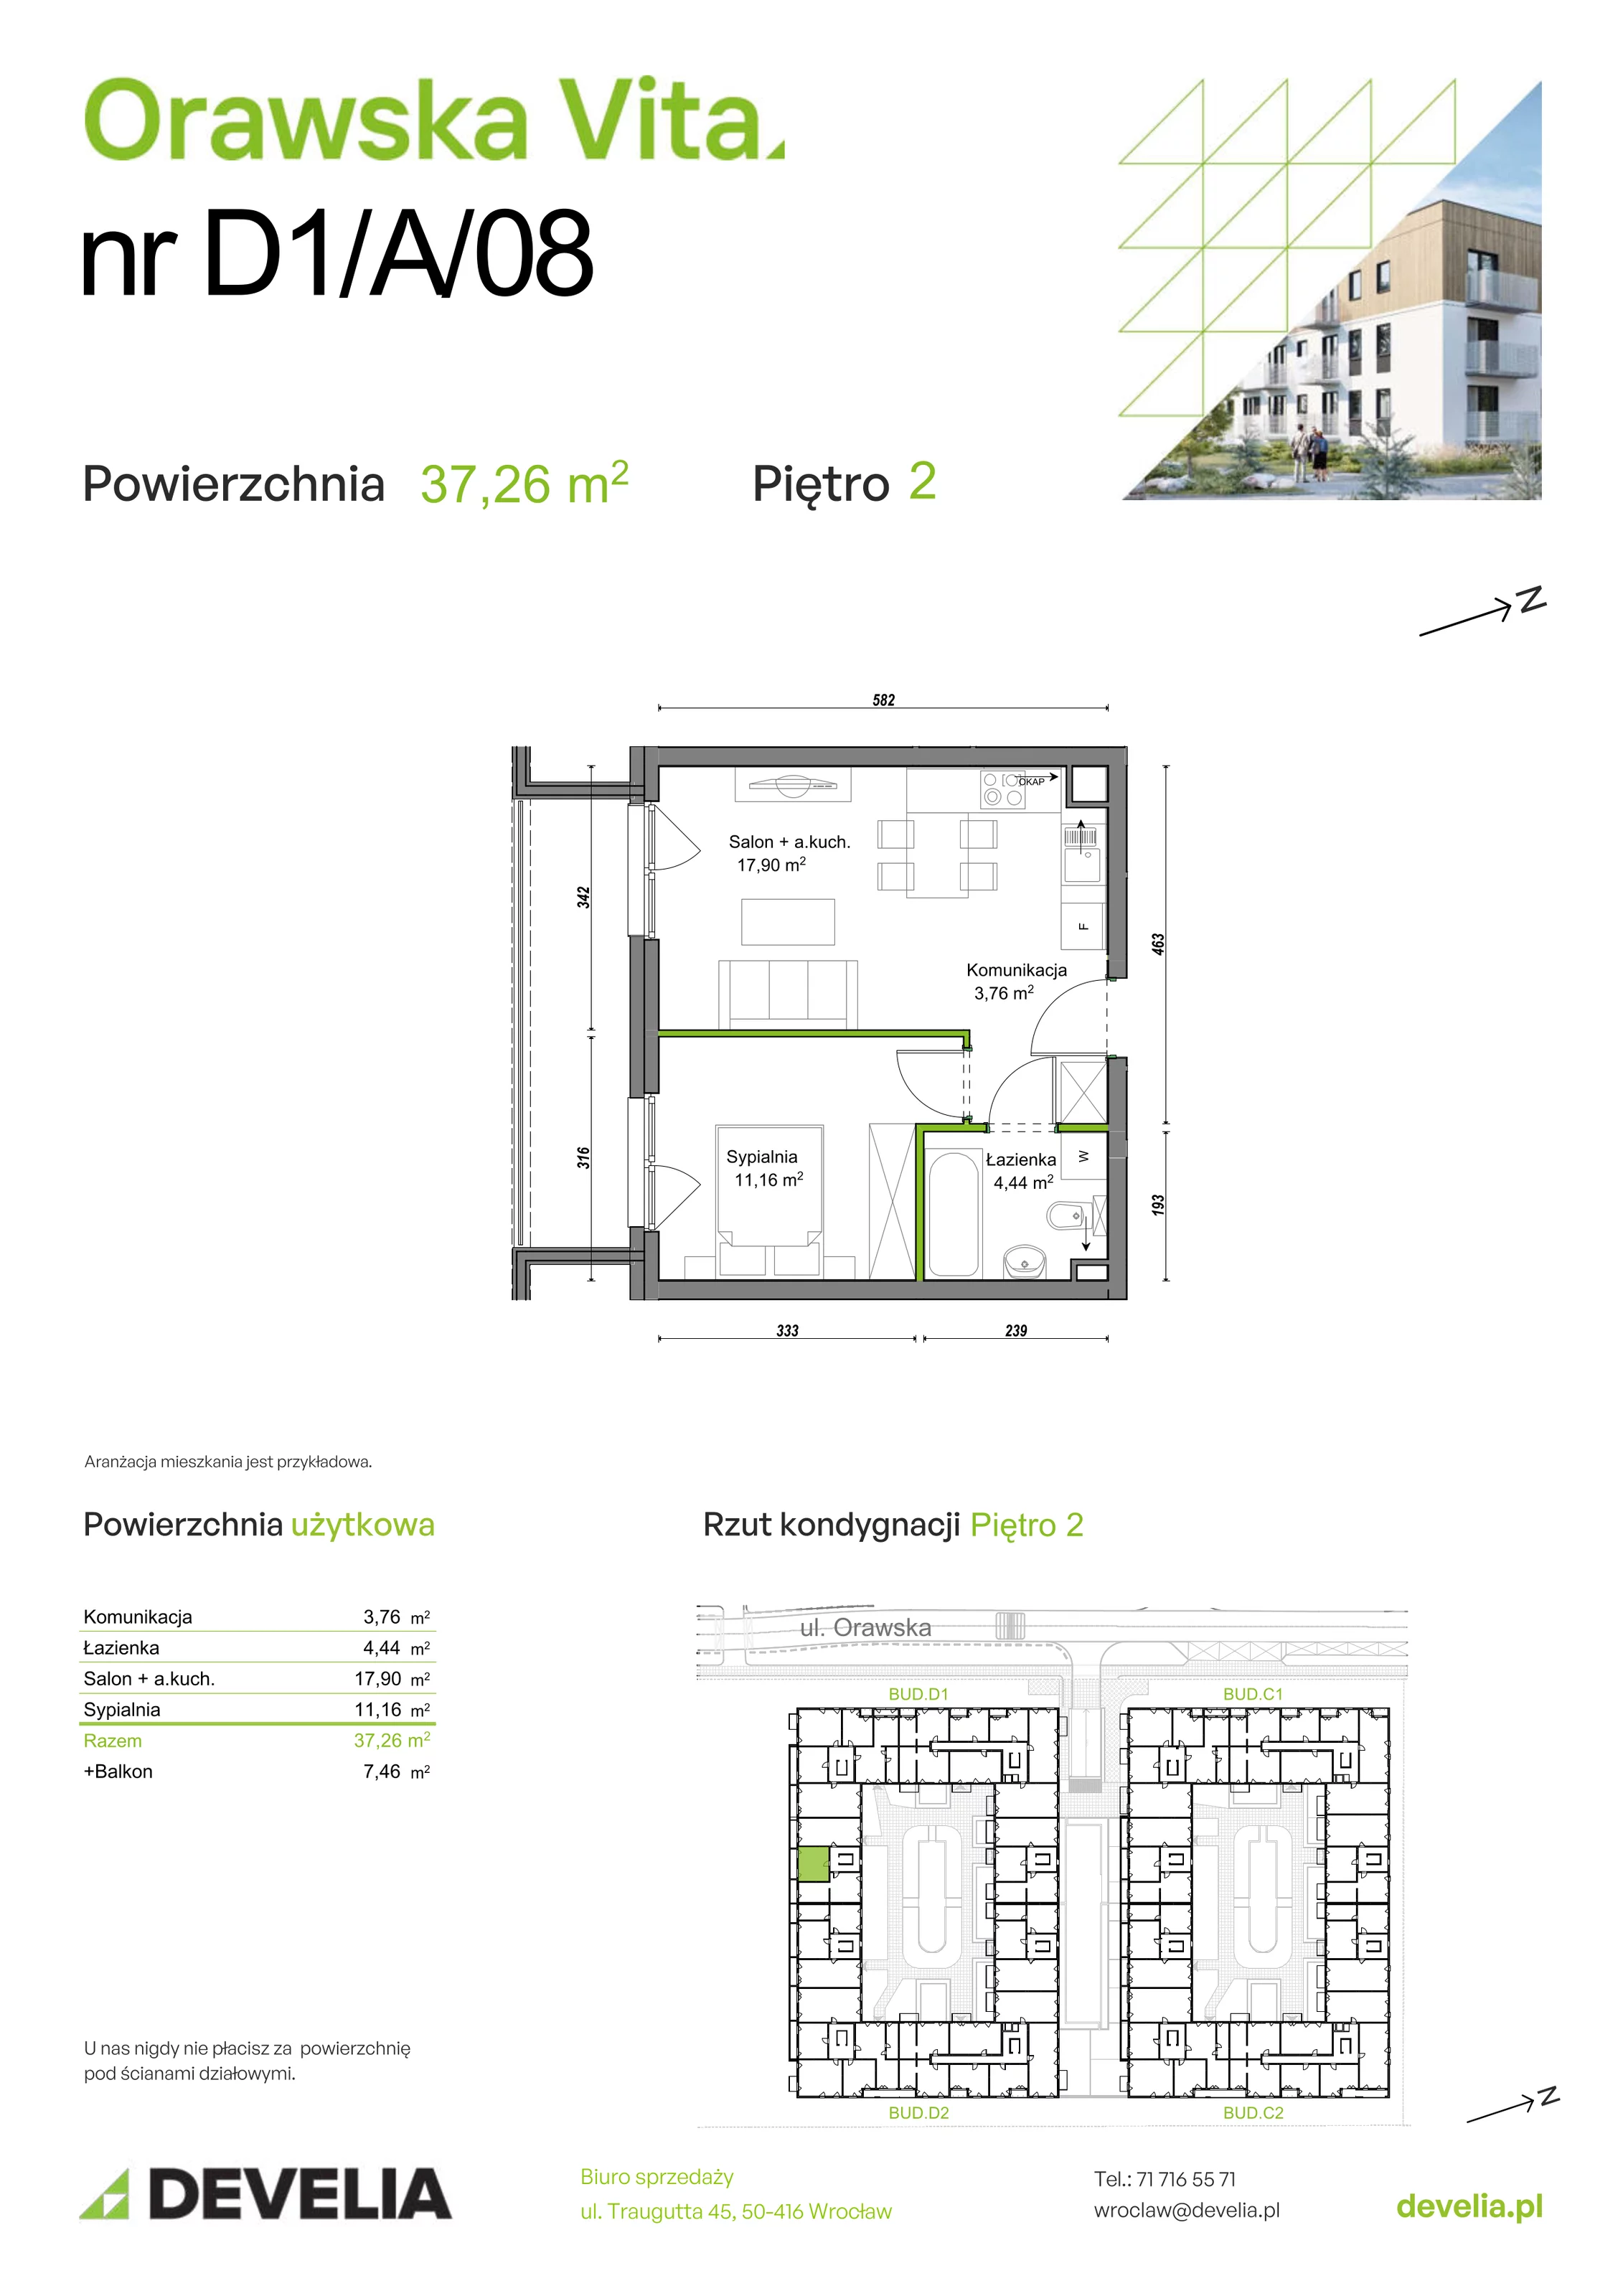 Mieszkanie 37,26 m², piętro 2, oferta nr D1/A/08, Orawska Vita, Wrocław, Ołtaszyn, Krzyki, ul. Orawska 73